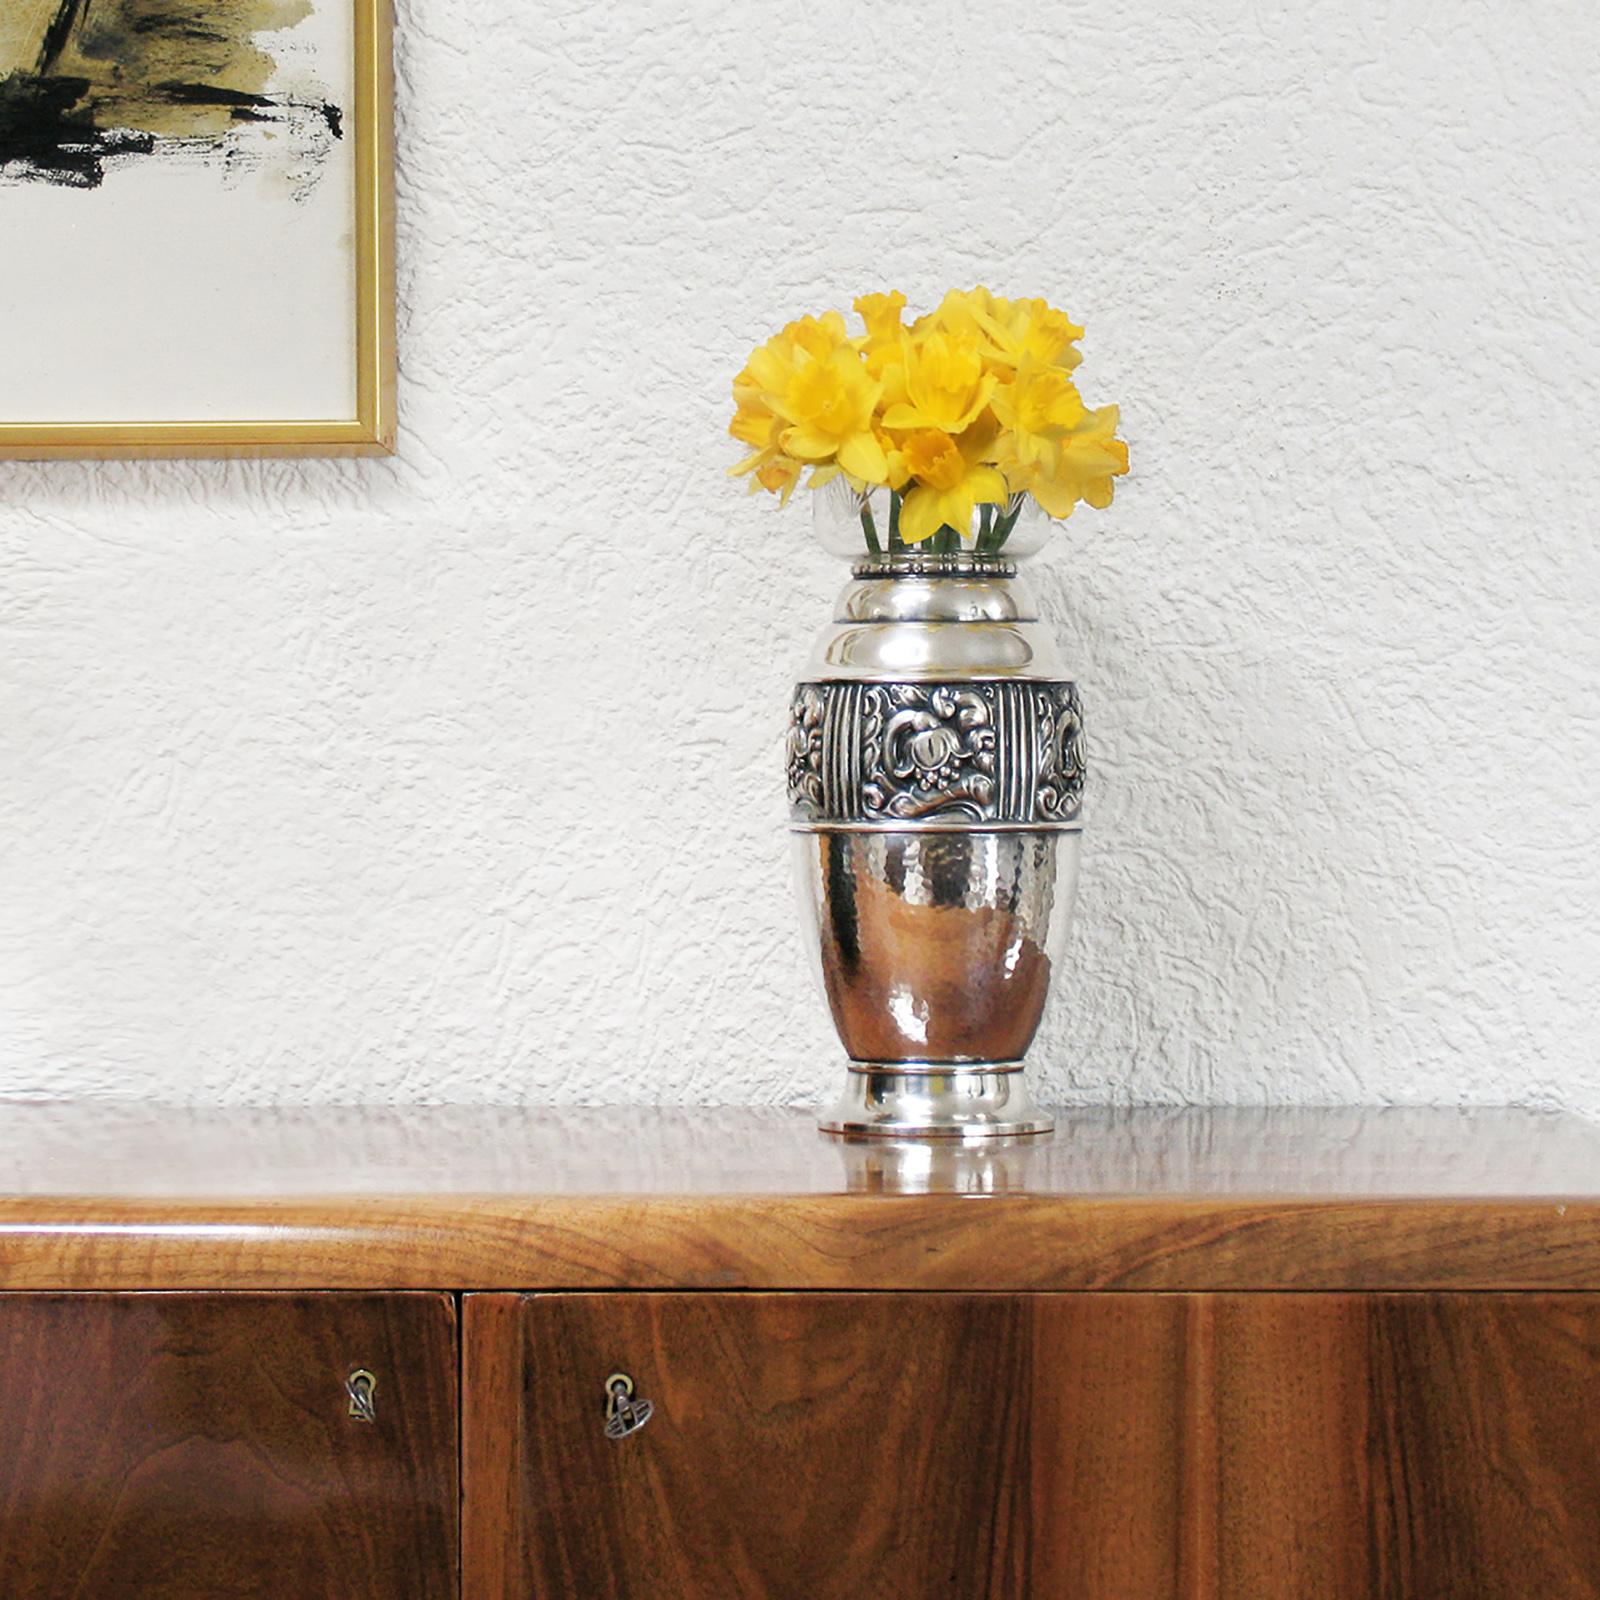 Jugendstil, Jugendstil, versilberte Vase, Carl M Cohr, Dänemark, 1900.
Diese äußerst seltene Jugendstilvase ist ein exquisites Beispiel für die Werke der frühen 1900er Jahre, die in bemerkenswerter Weise von dem renommierten dänischen Hersteller